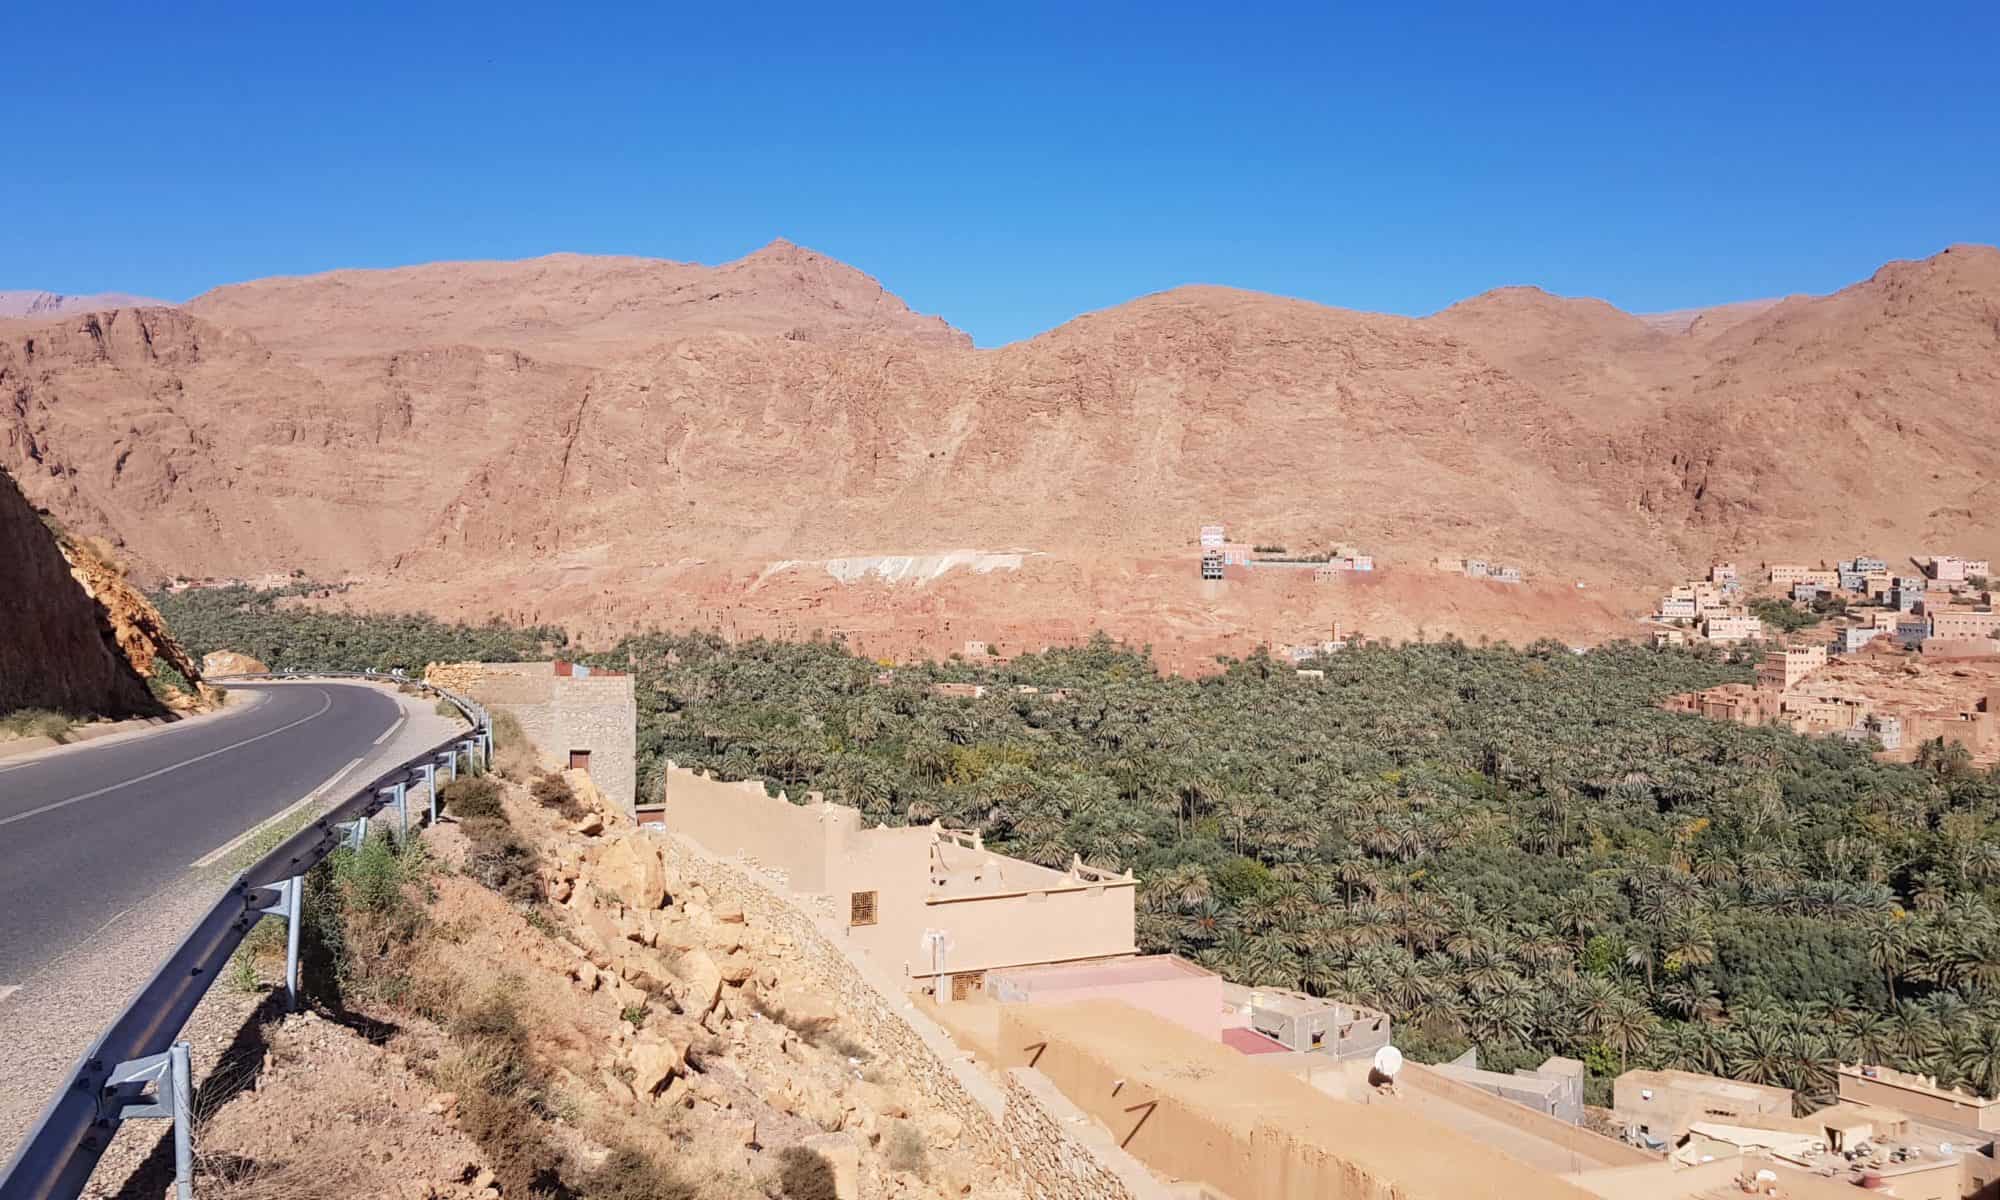 Marokko-Rundreise: So planst du deinen perfekten Roadtrip